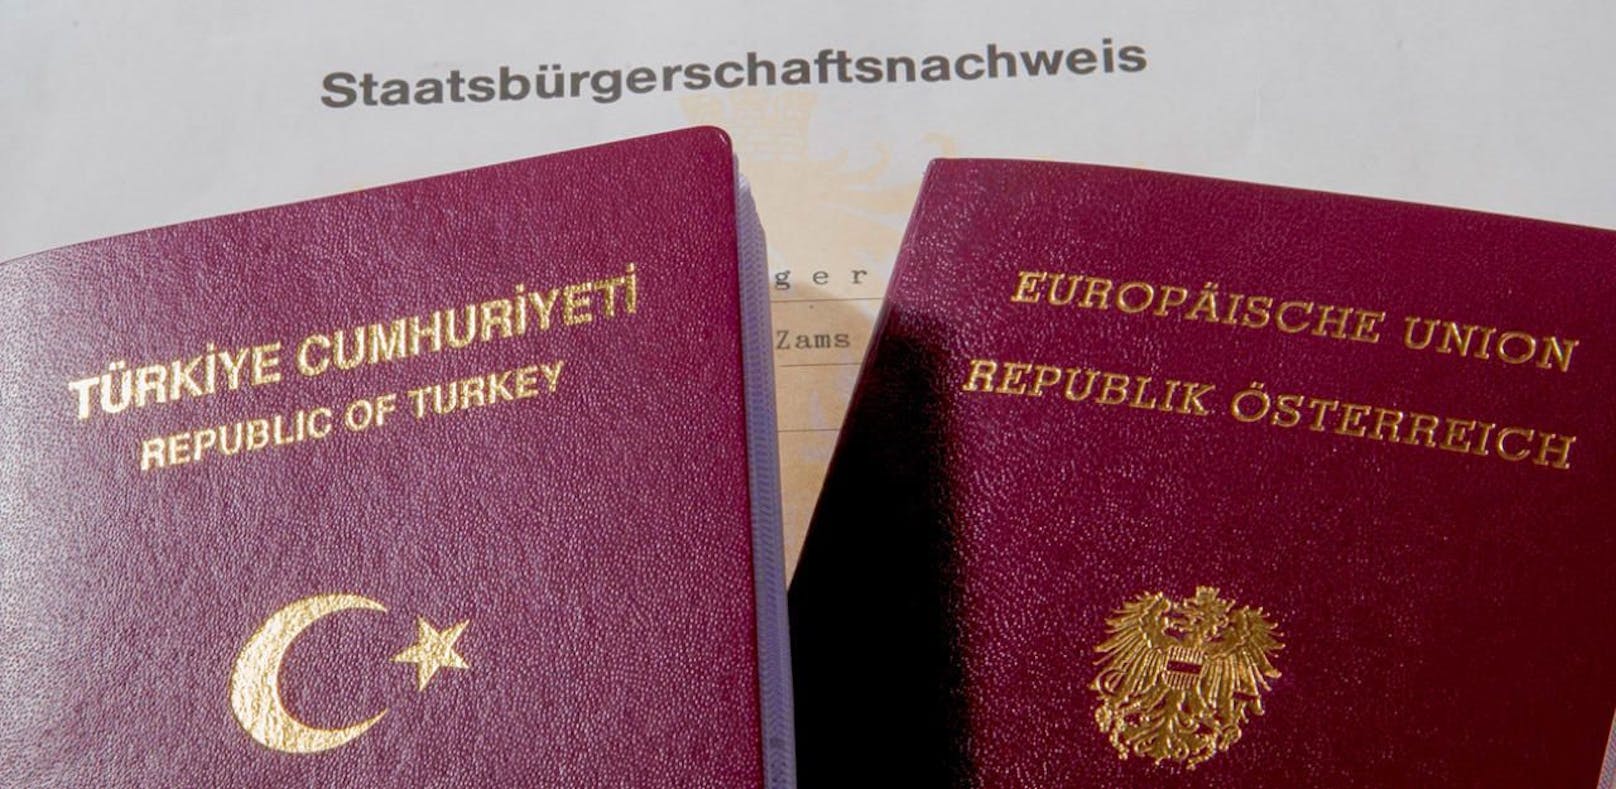 Im Bild ein türkischer (l.) und ein österreichischer Reisepass.